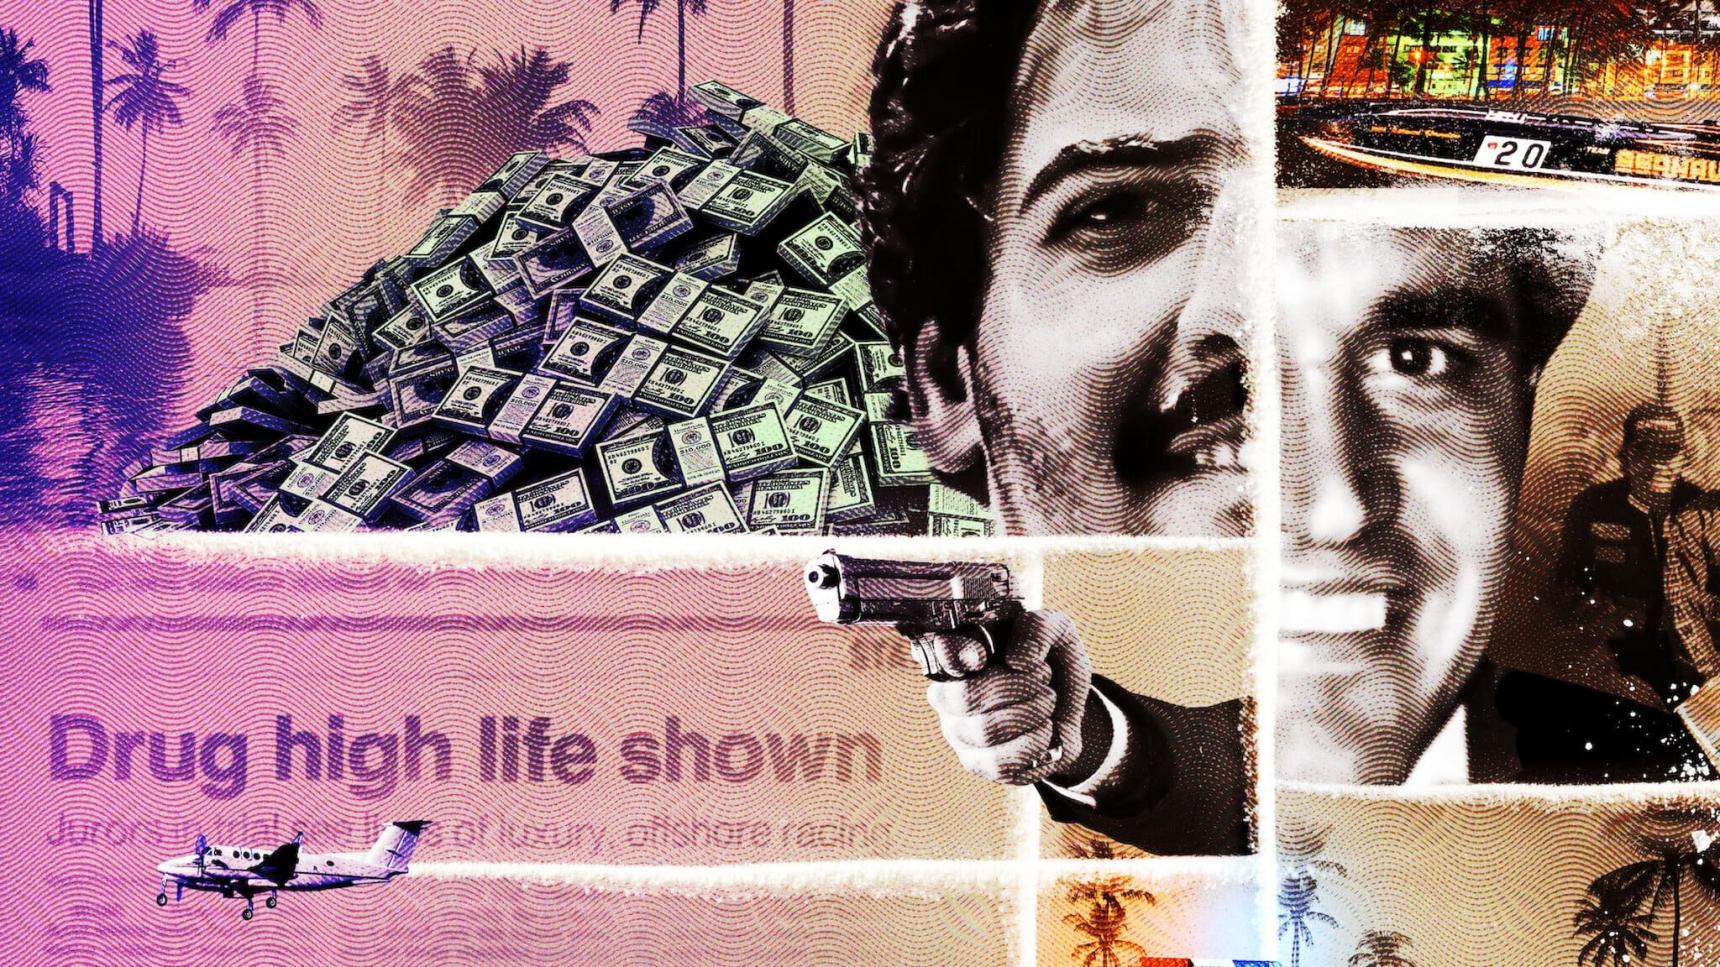 Fondo de pantalla de Cocaine Cowboys: Los reyes de Miami online